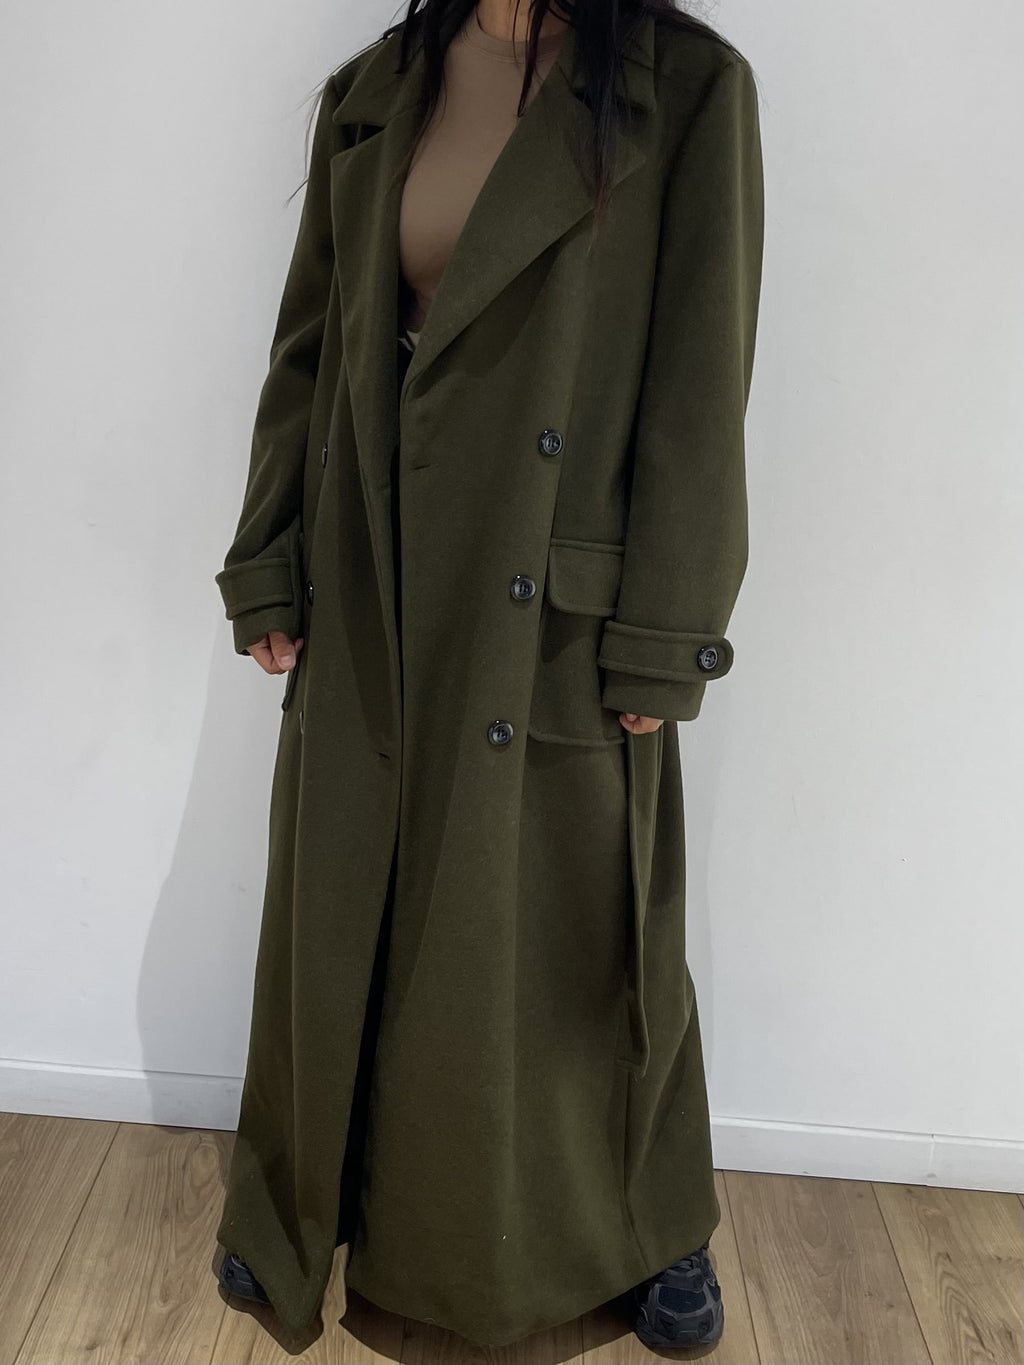 Manteau long kaki pour femme boutonné, démontrant la coupe et le design.